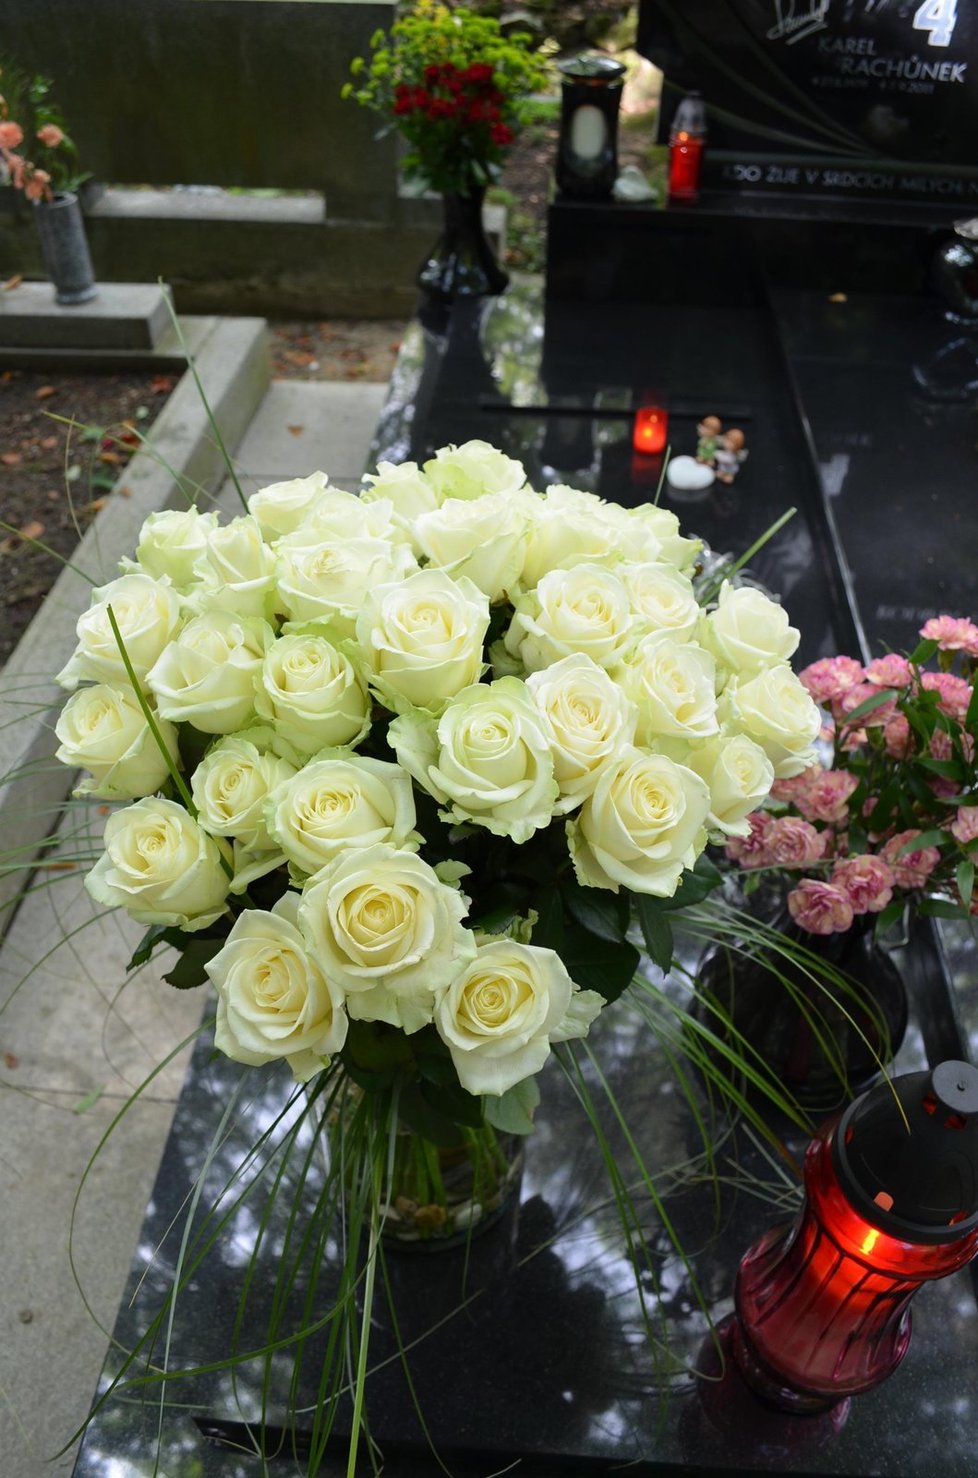 Manželka Kateřina přinesla Karlovi k narozeninám krásnou kytici 33 bílých růží